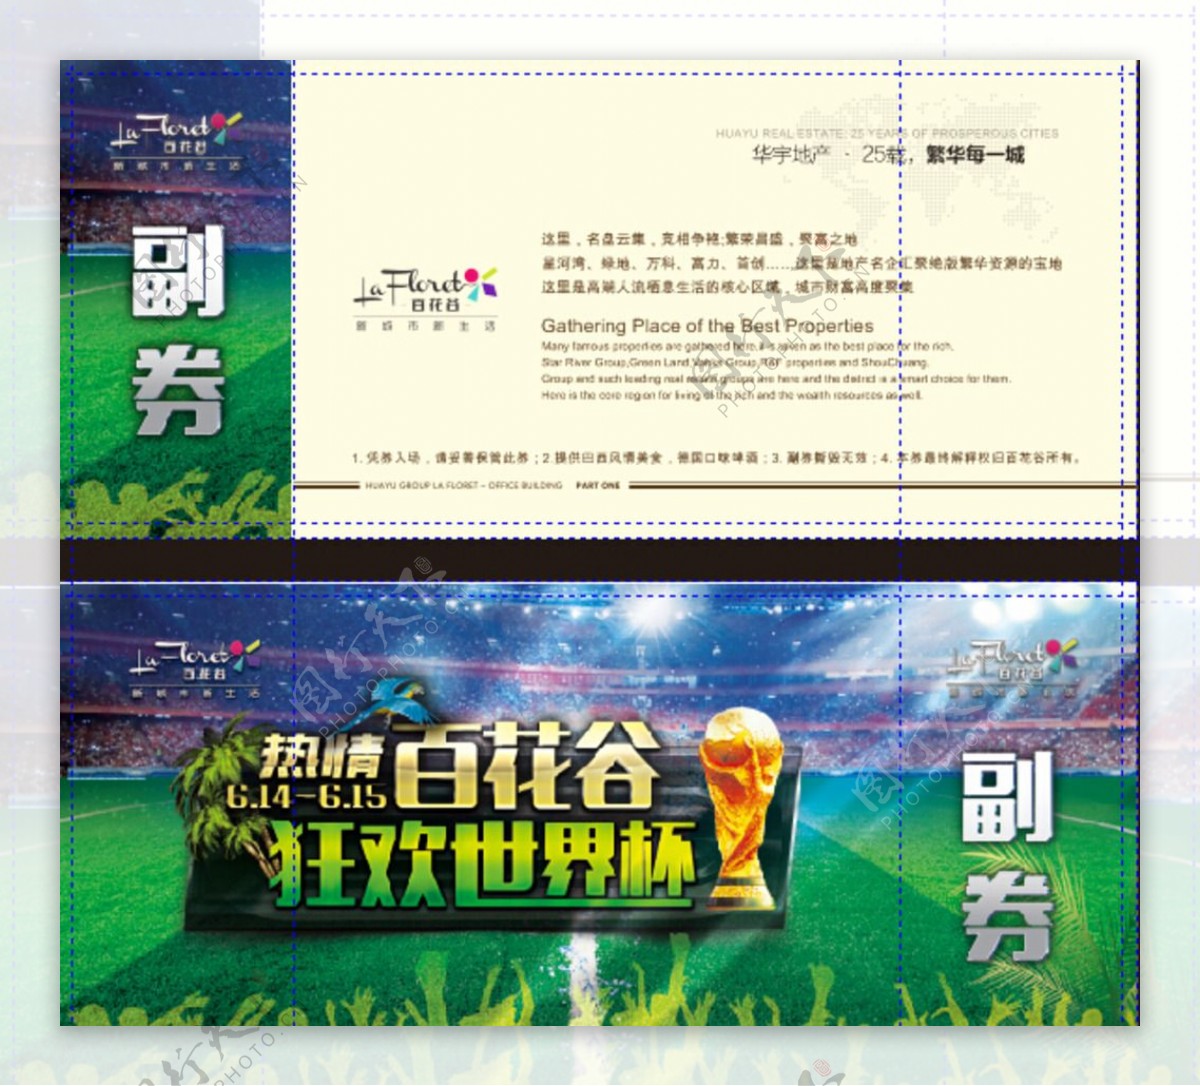 世界杯地产活动入场券图片